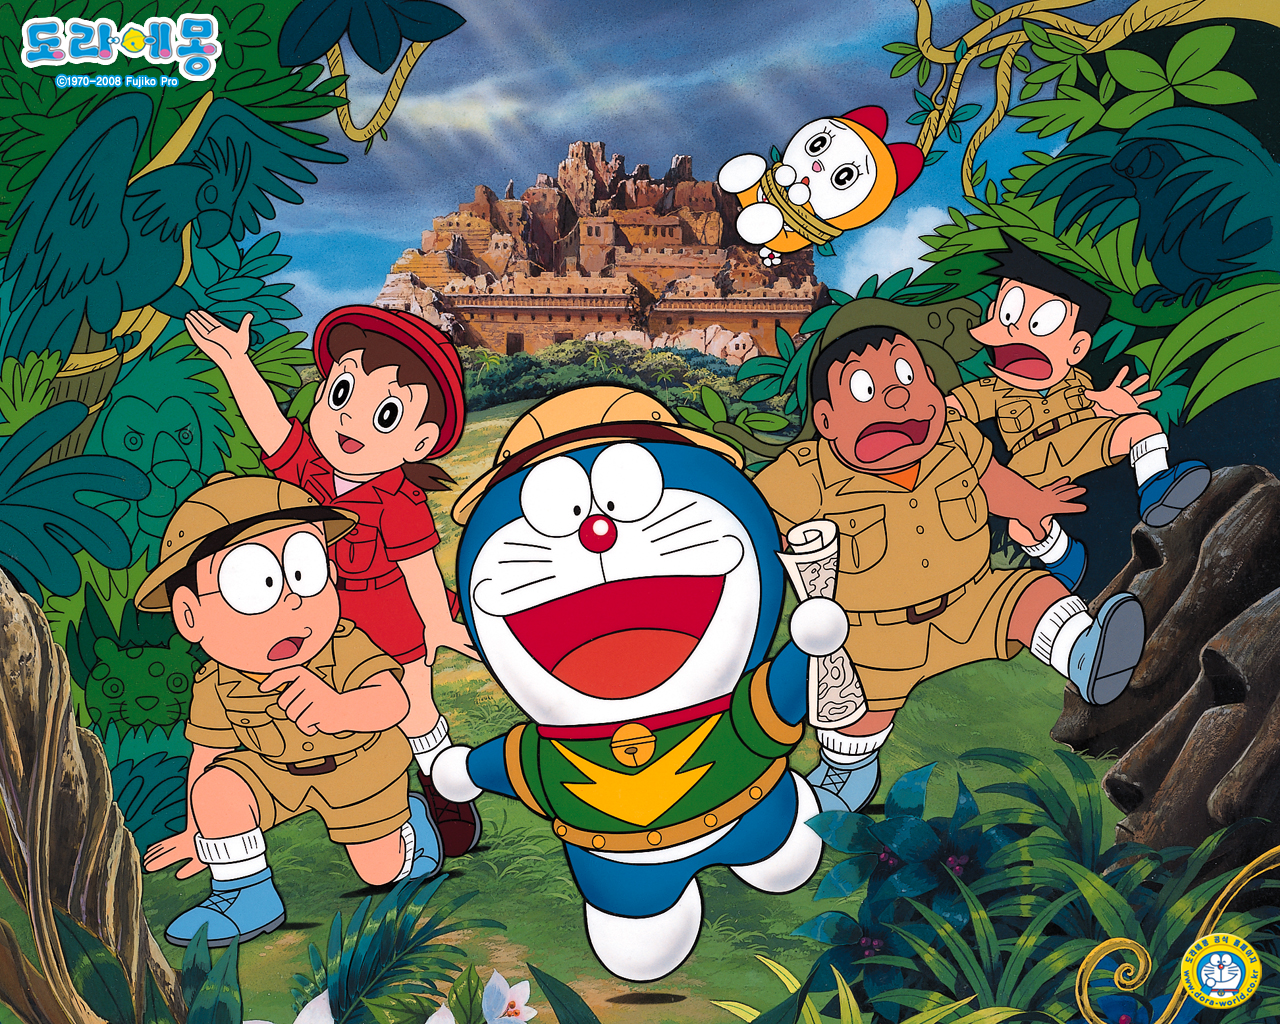 Bạn đang tìm kiếm những hình ảnh của Doraemon để làm vui lòng trái tim trẻ con của bạn? Hãy đến với chúng tôi và chiêm ngưỡng những bức ảnh đáng yêu của chú mèo máy này. Với đủ các phiên bản và tình huống khác nhau, bạn sẽ chắc chắn tìm thấy những tấm hình ưng ý của mình!